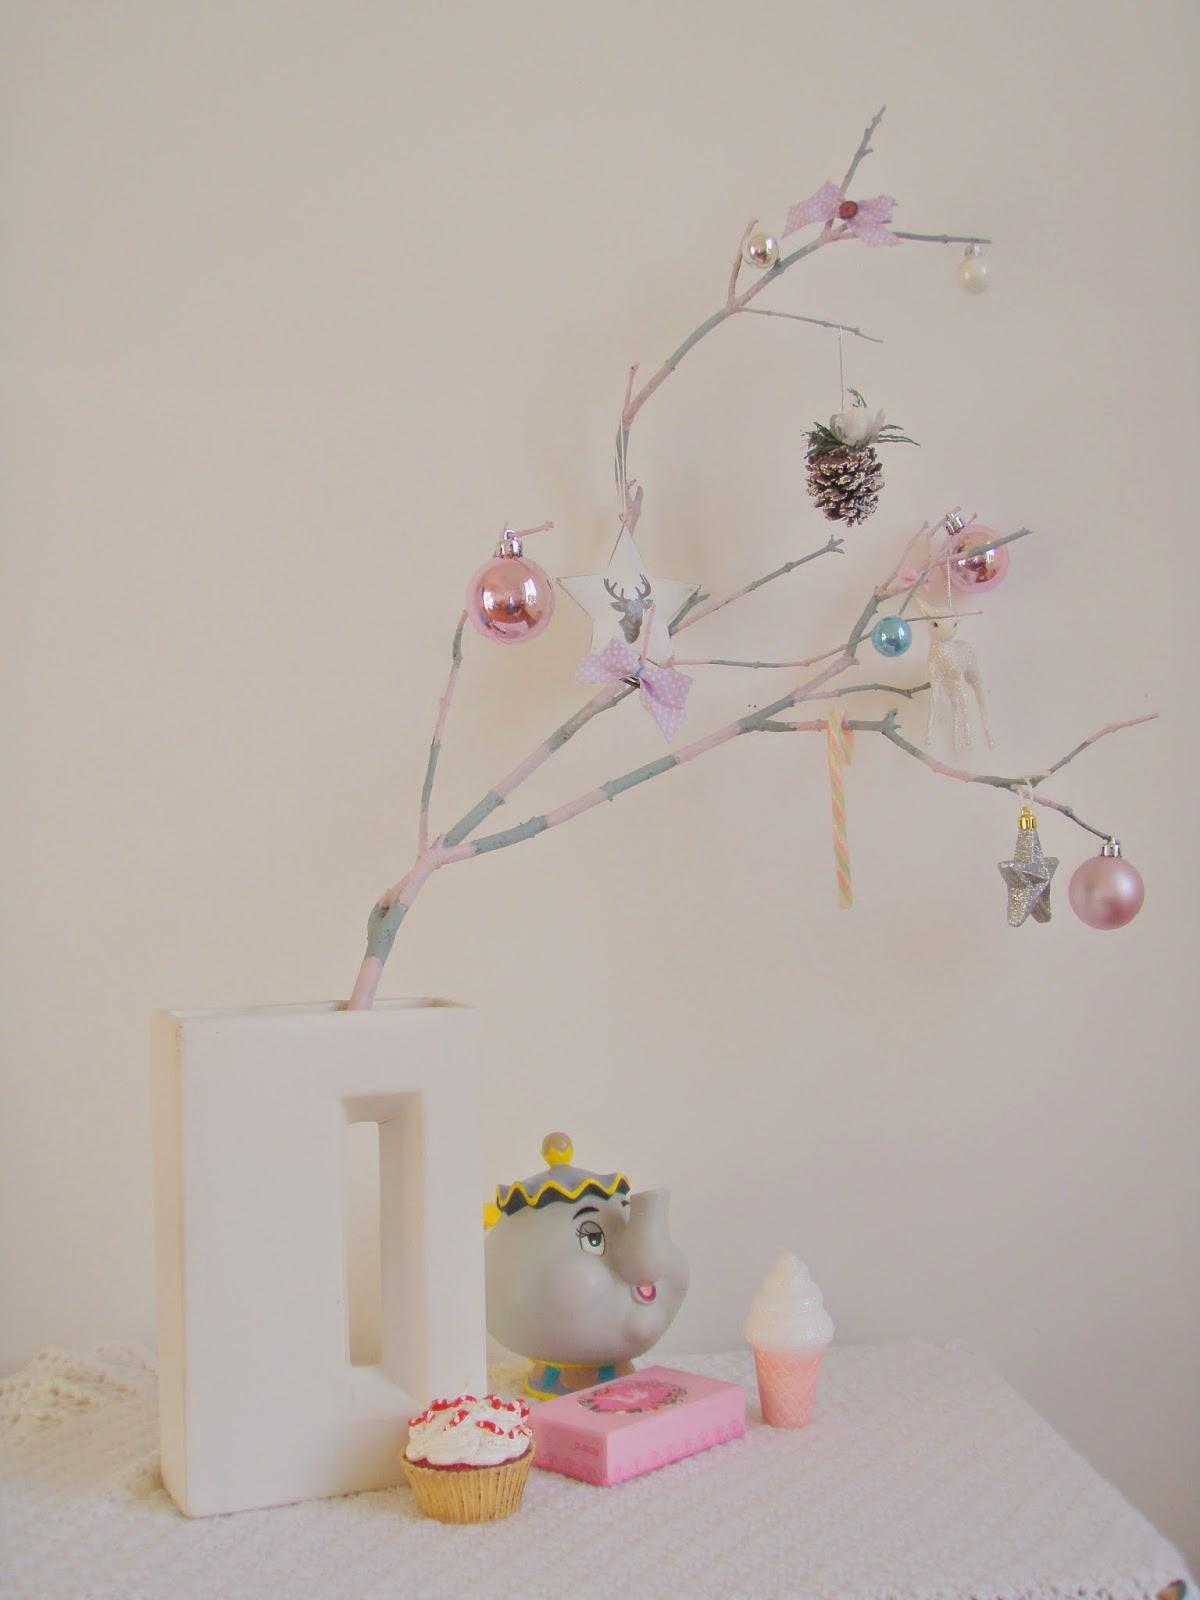 Noël pastel et sucré #4 : Les jolies branches